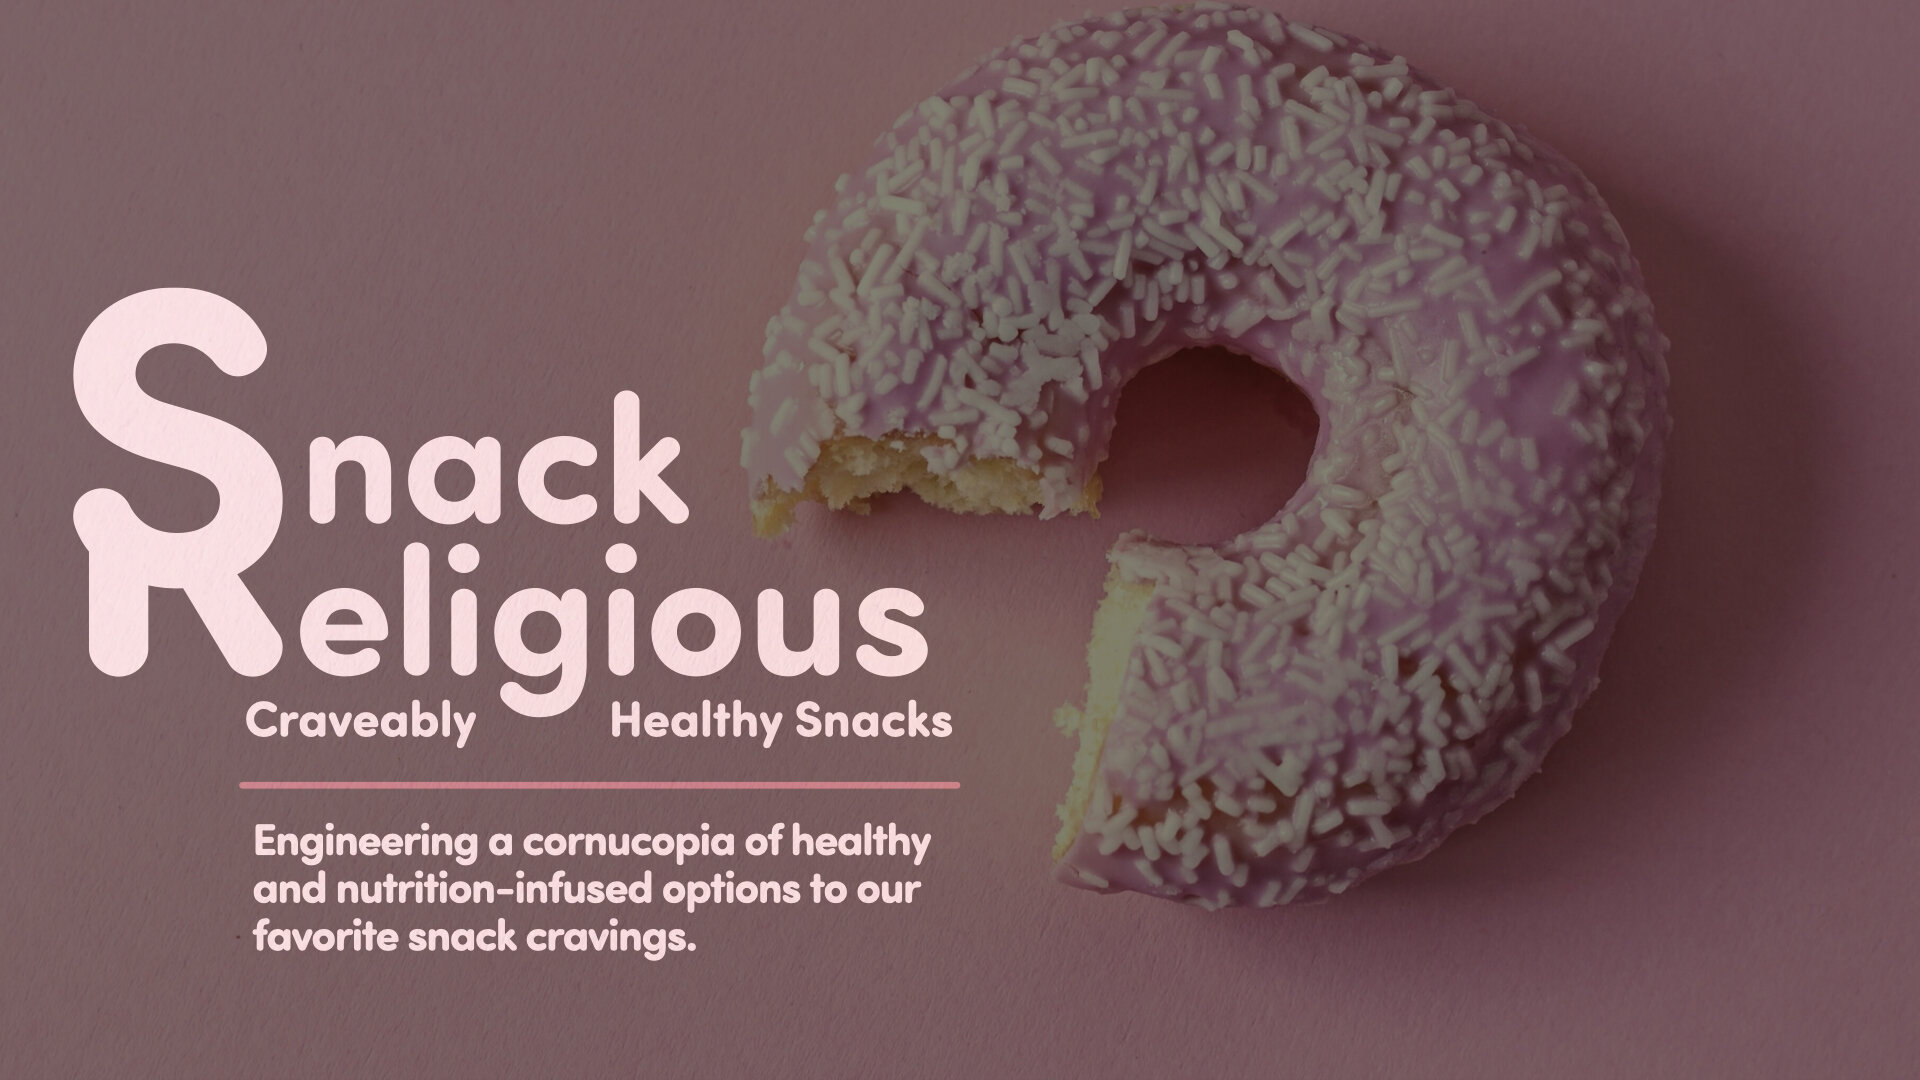 Snack Religious